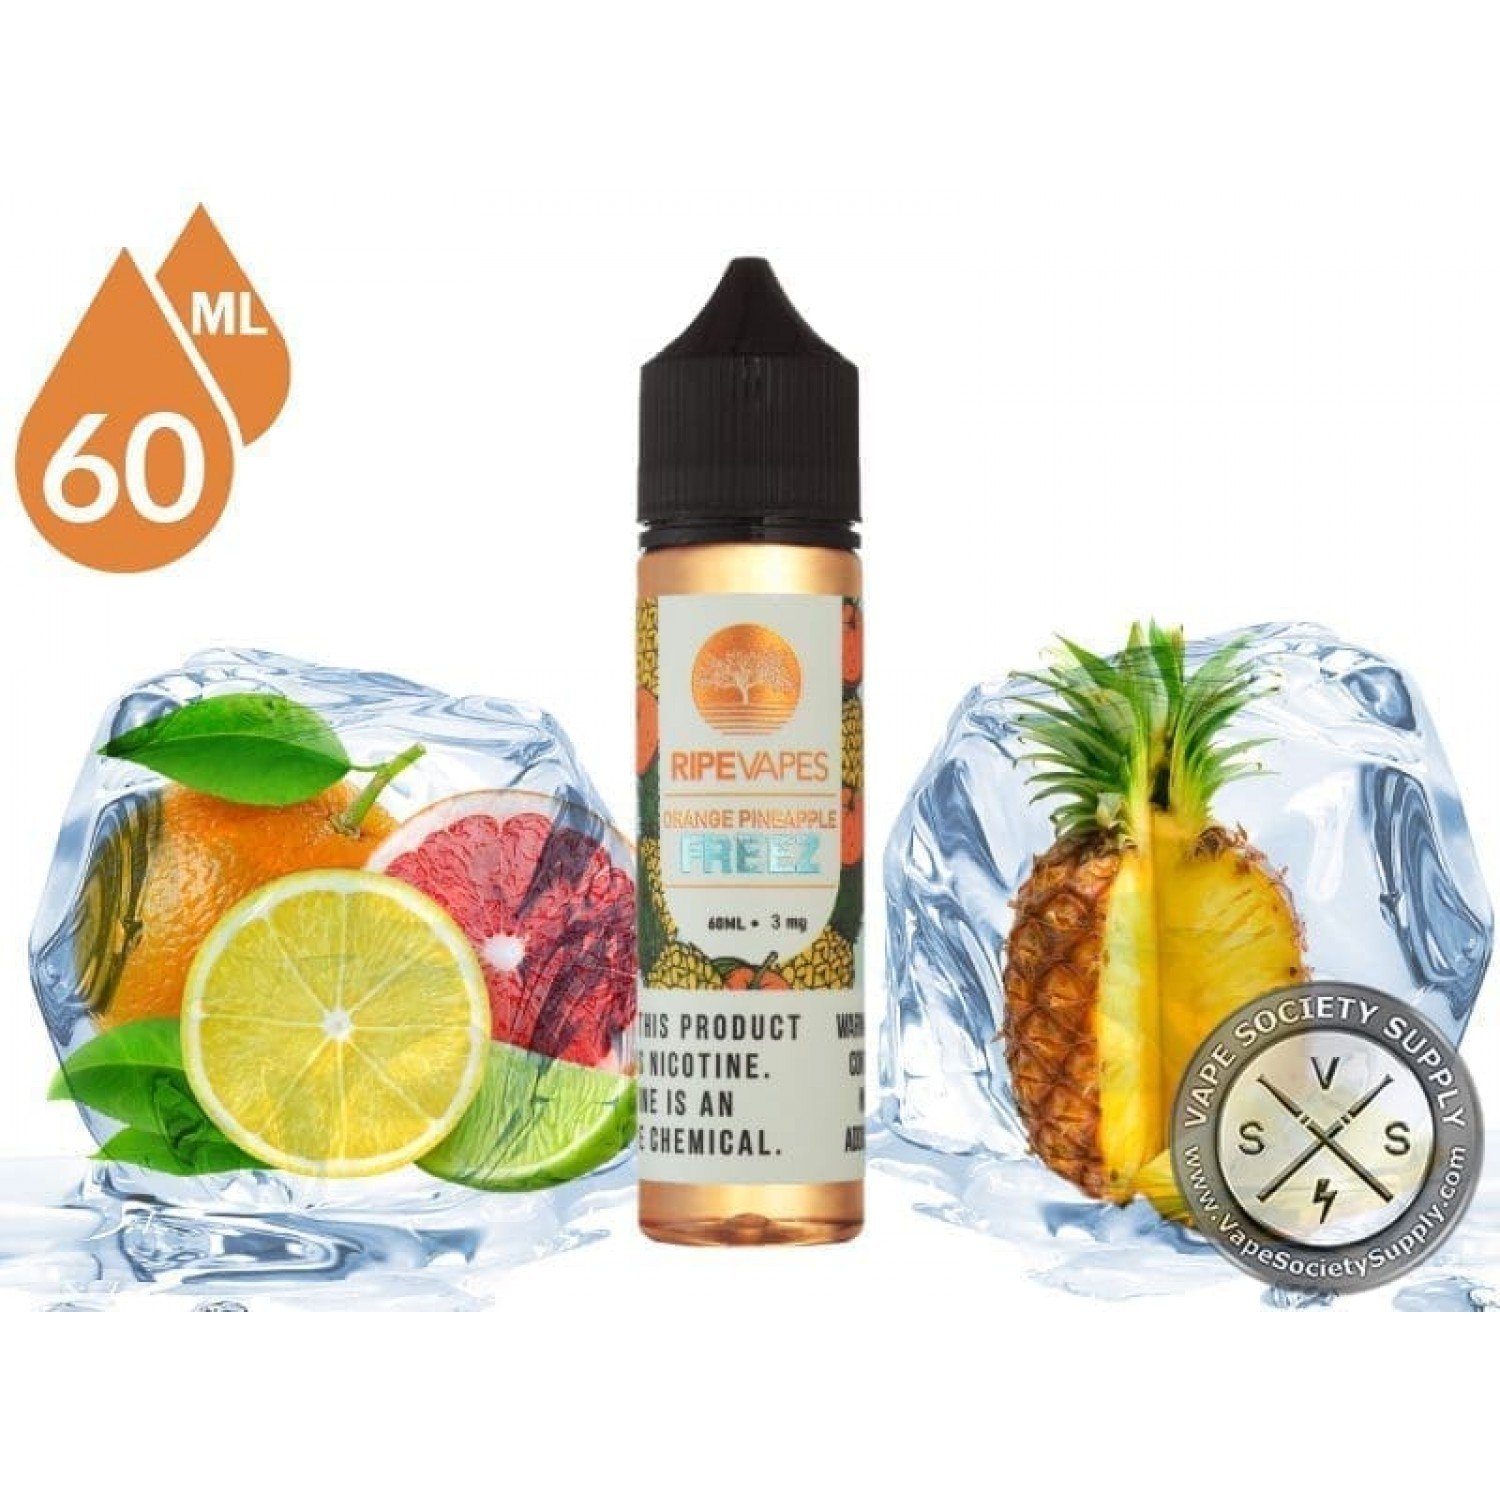 Ripe Vapes - Orange Pineapple Freez 60 ml Premium Likit